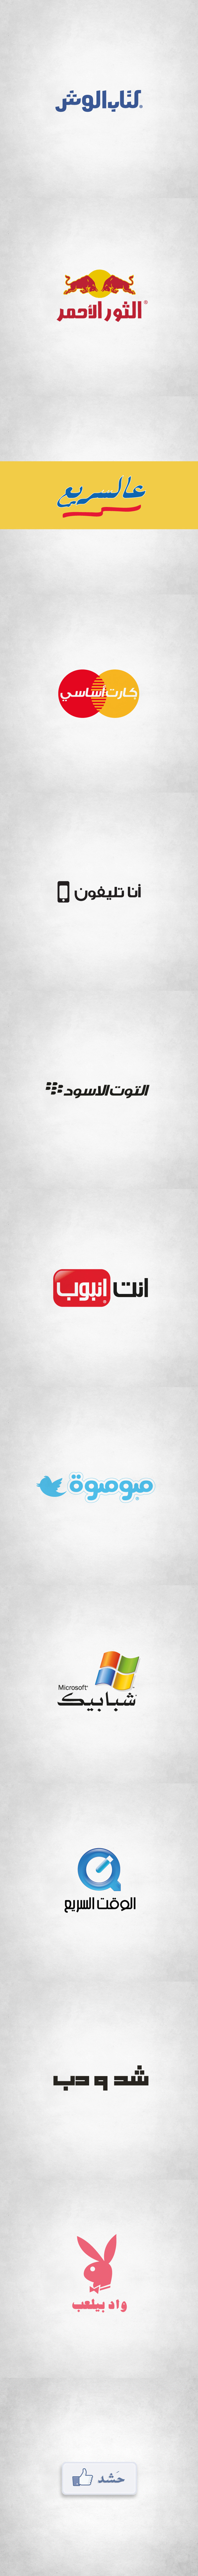 Adobe Portfolio arabic logo